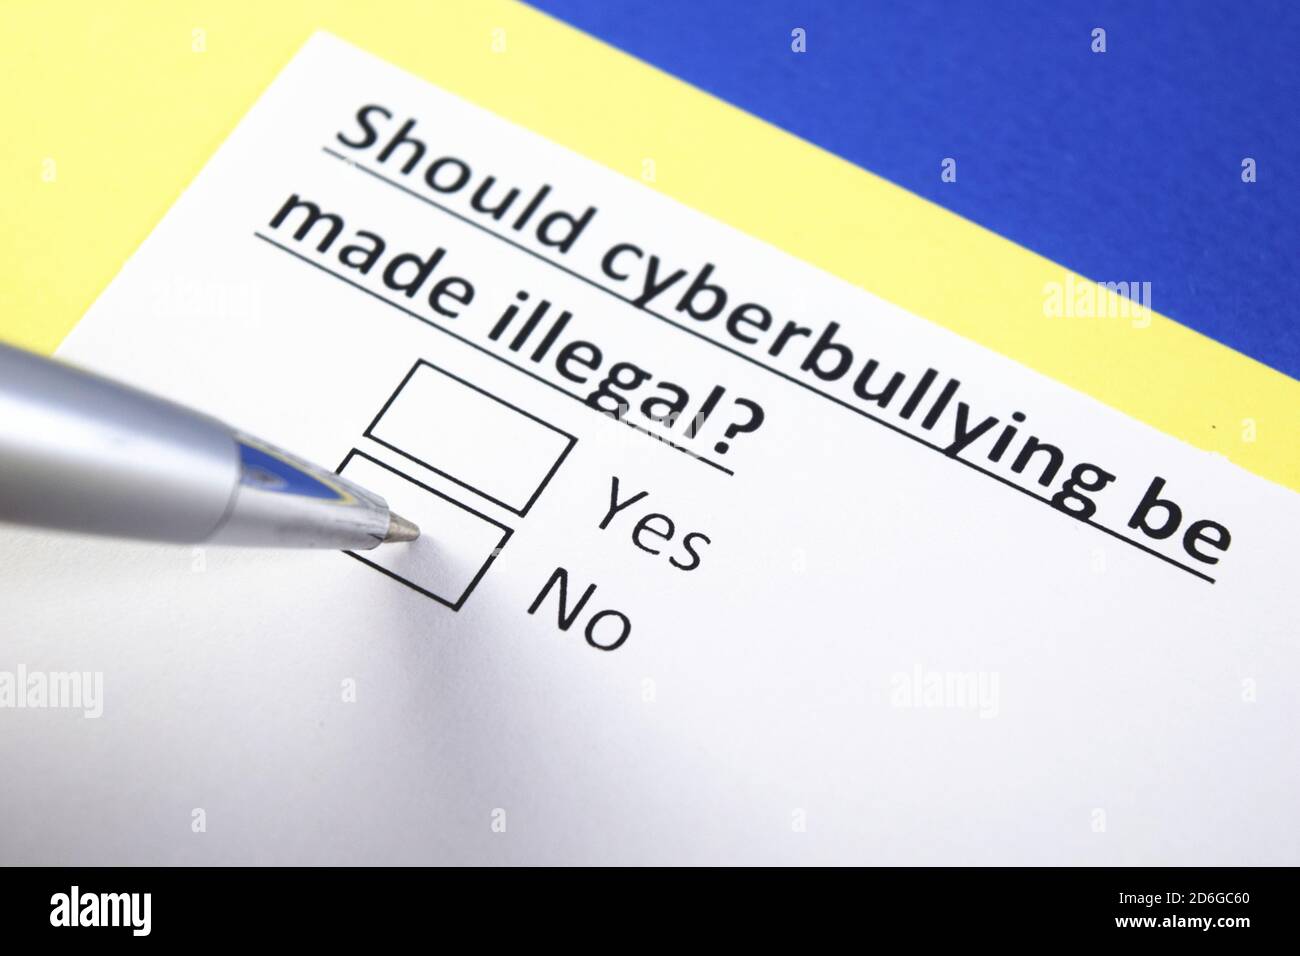 Sollte Cybermobbing illegal gemacht werden? Ja oder Nein? Stockfoto